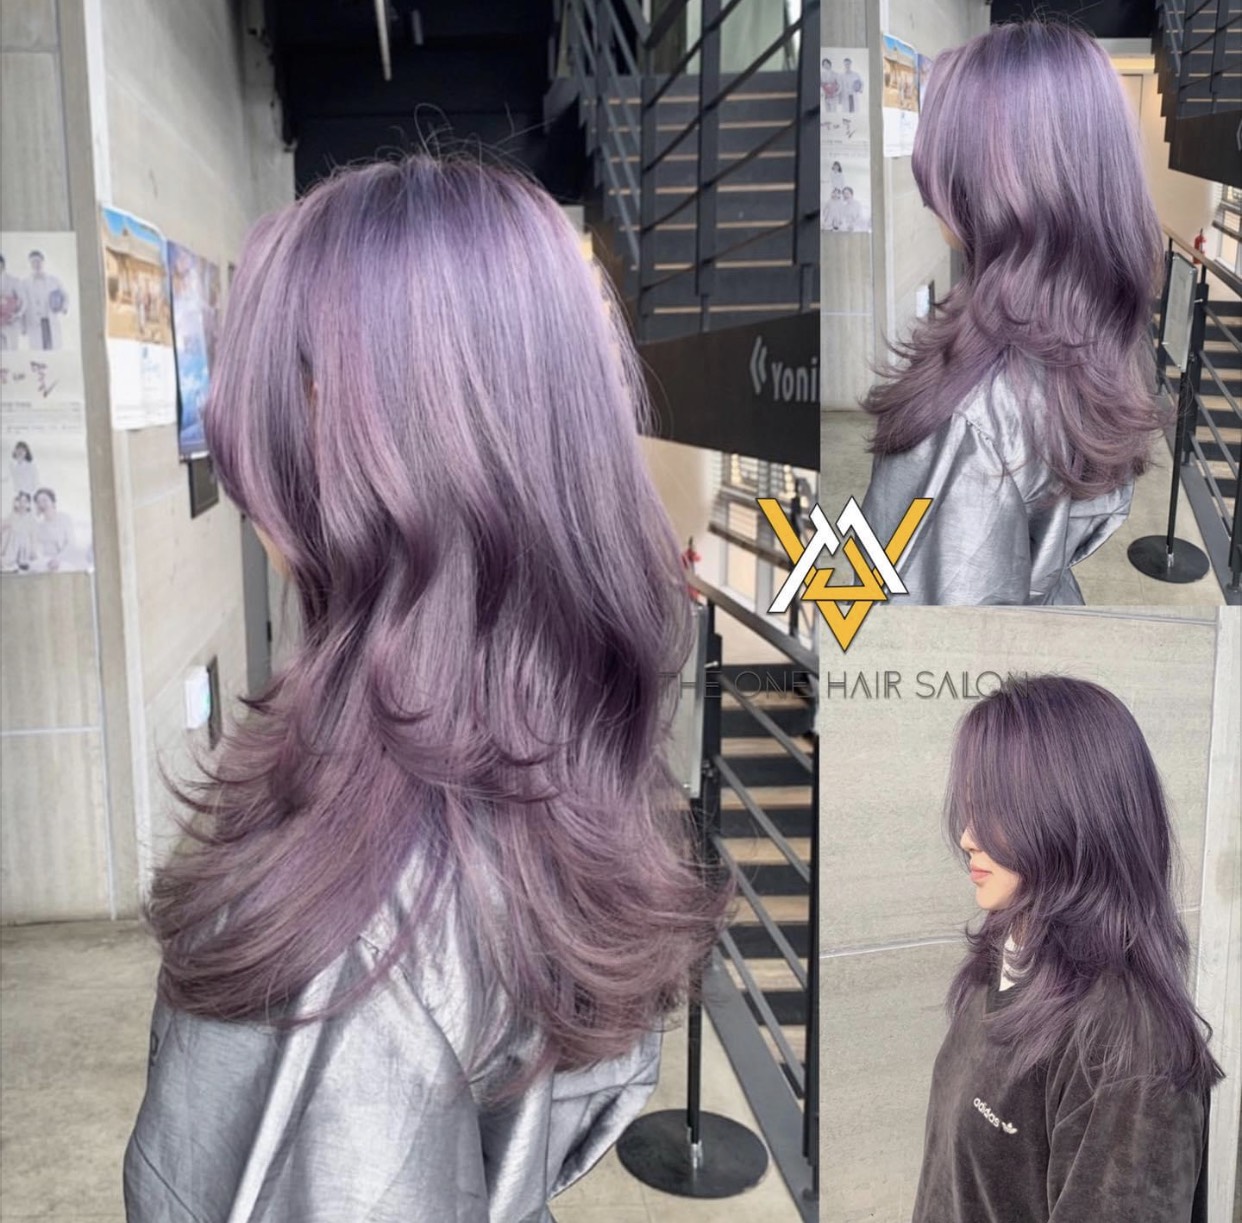 Hãy trải nghiệm một phong cách mới cùng thuốc nhuộm tóc màu Tím baby violet. Với màu sắc dịu nhẹ nhưng không kém phần thu hút, tóc của bạn sẽ trở nên đầy cá tính và nổi bật hơn bao giờ hết. Nhấn play để khám phá thêm những điều thú vị về sản phẩm này nhé!